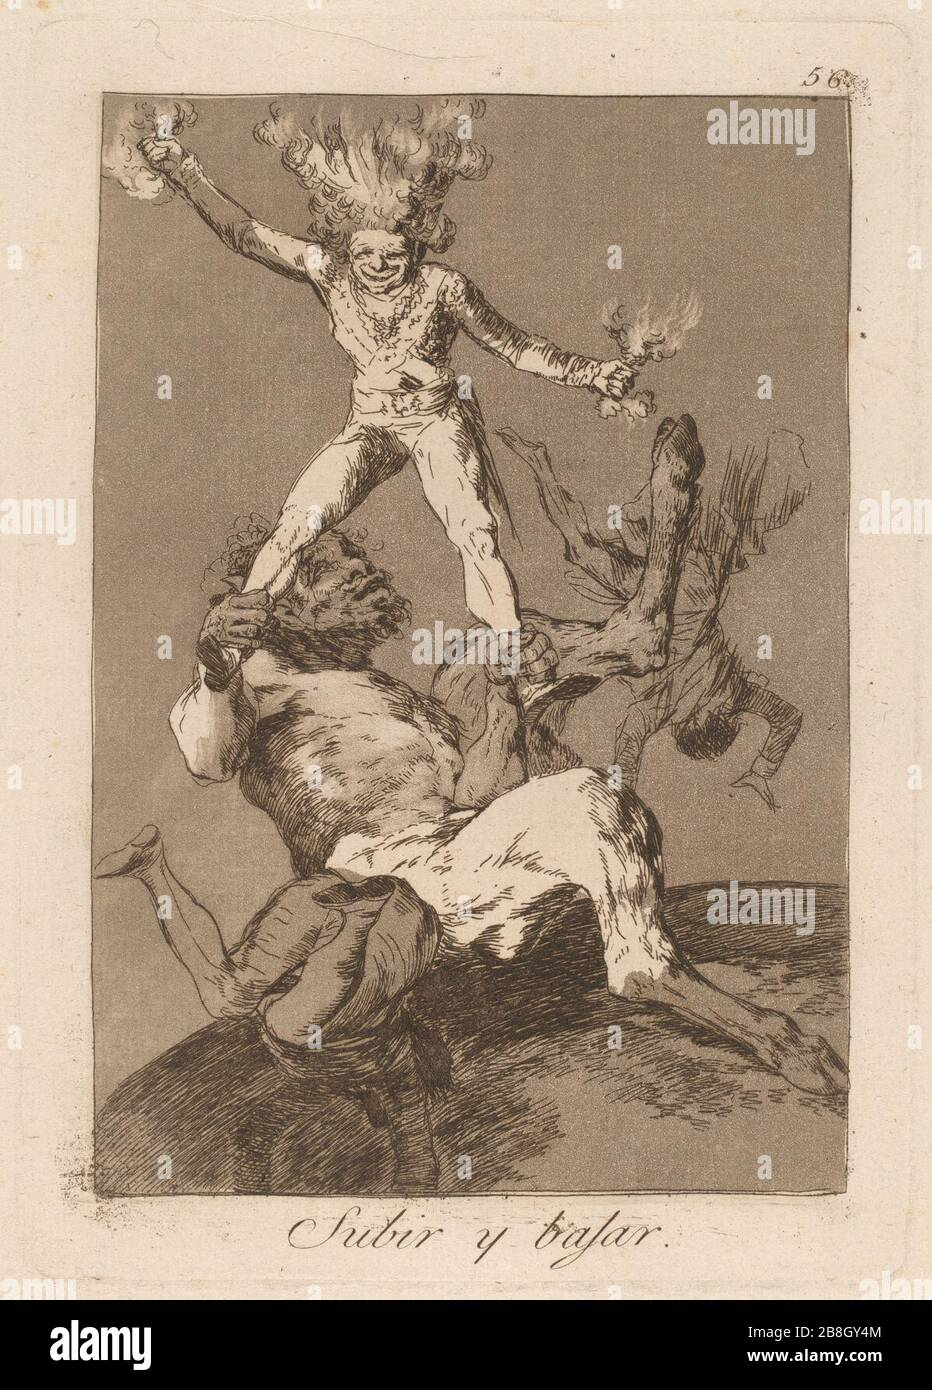 Goya - Los caprichos - Subir y bajar. Stock Photo